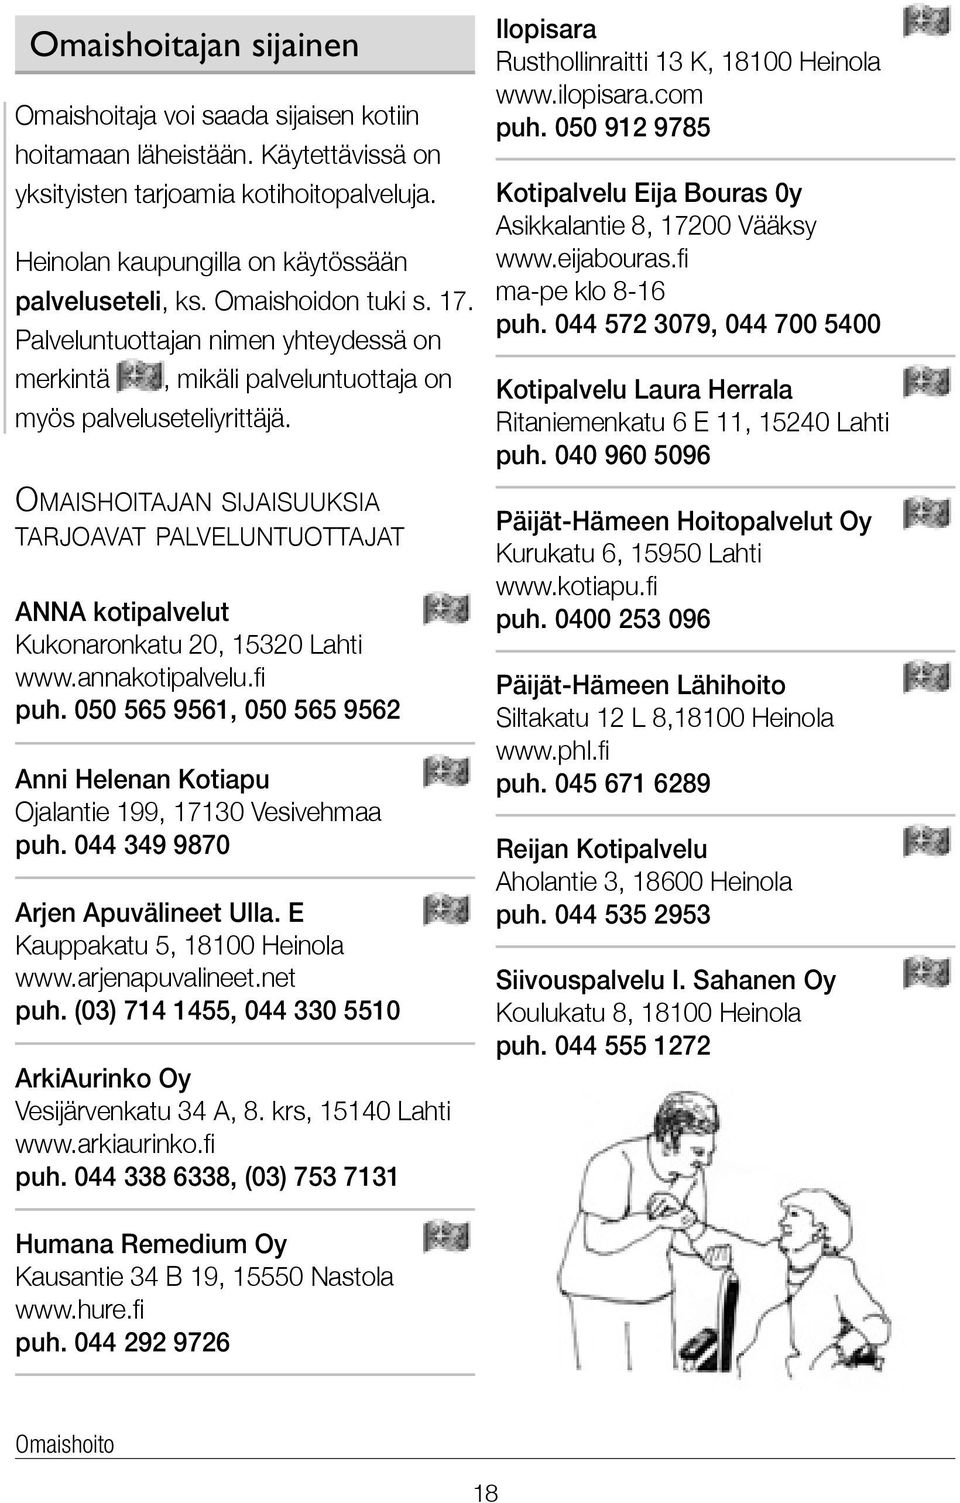 Omaishoitajan sijaisuuksia tarjoavat palveluntuottajat ANNA kotipalvelut Kukonaronkatu 20, 15320 Lahti www.annakotipalvelu.fi puh.